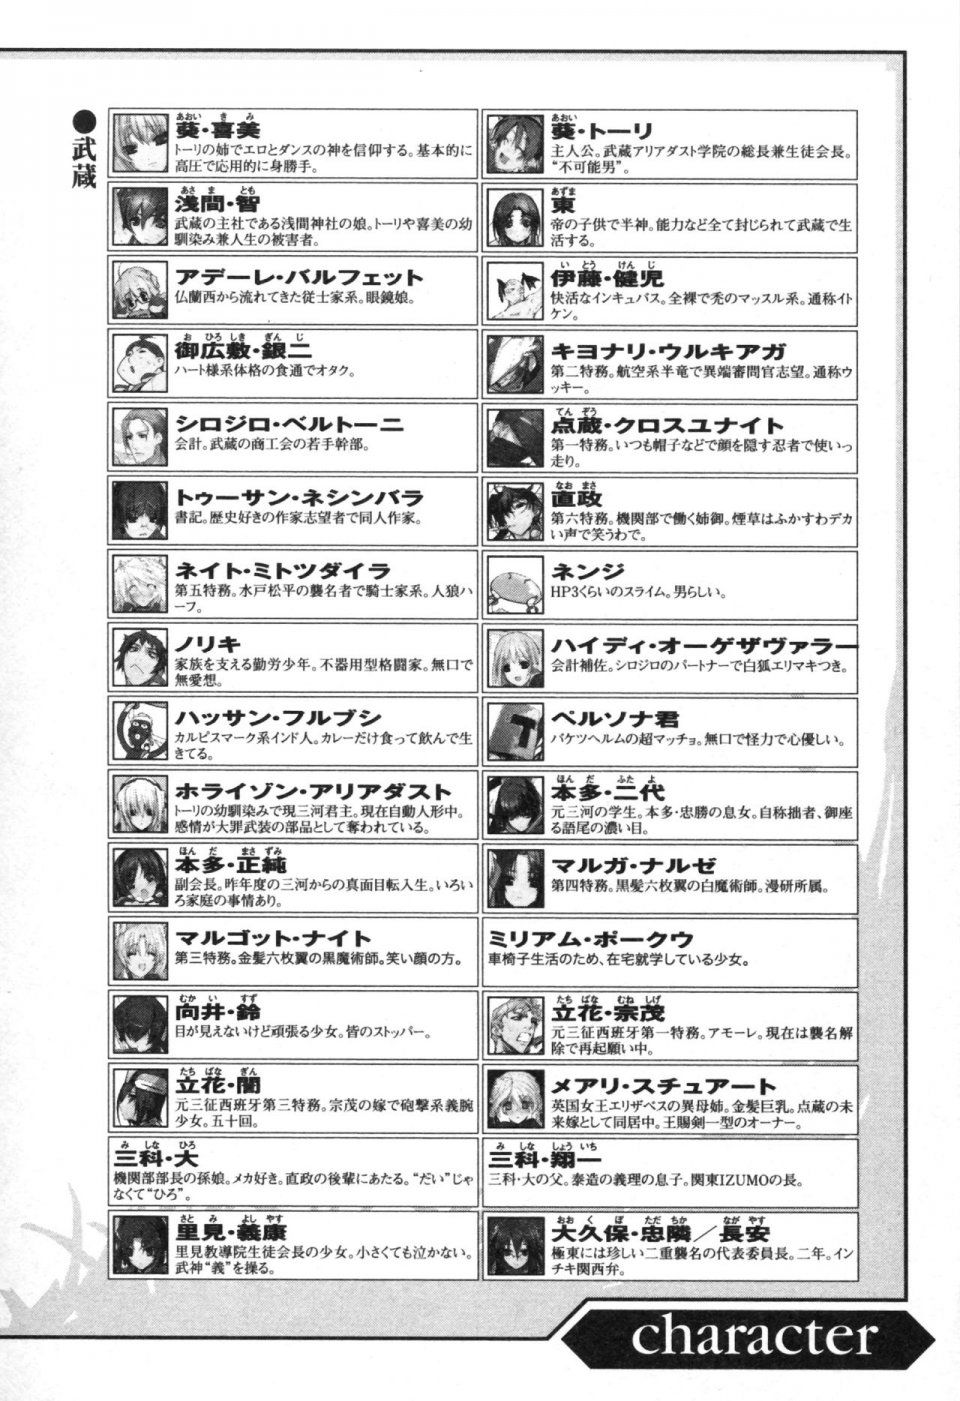 Kyoukai Senjou no Horizon LN Vol 13(6A) - Photo #10